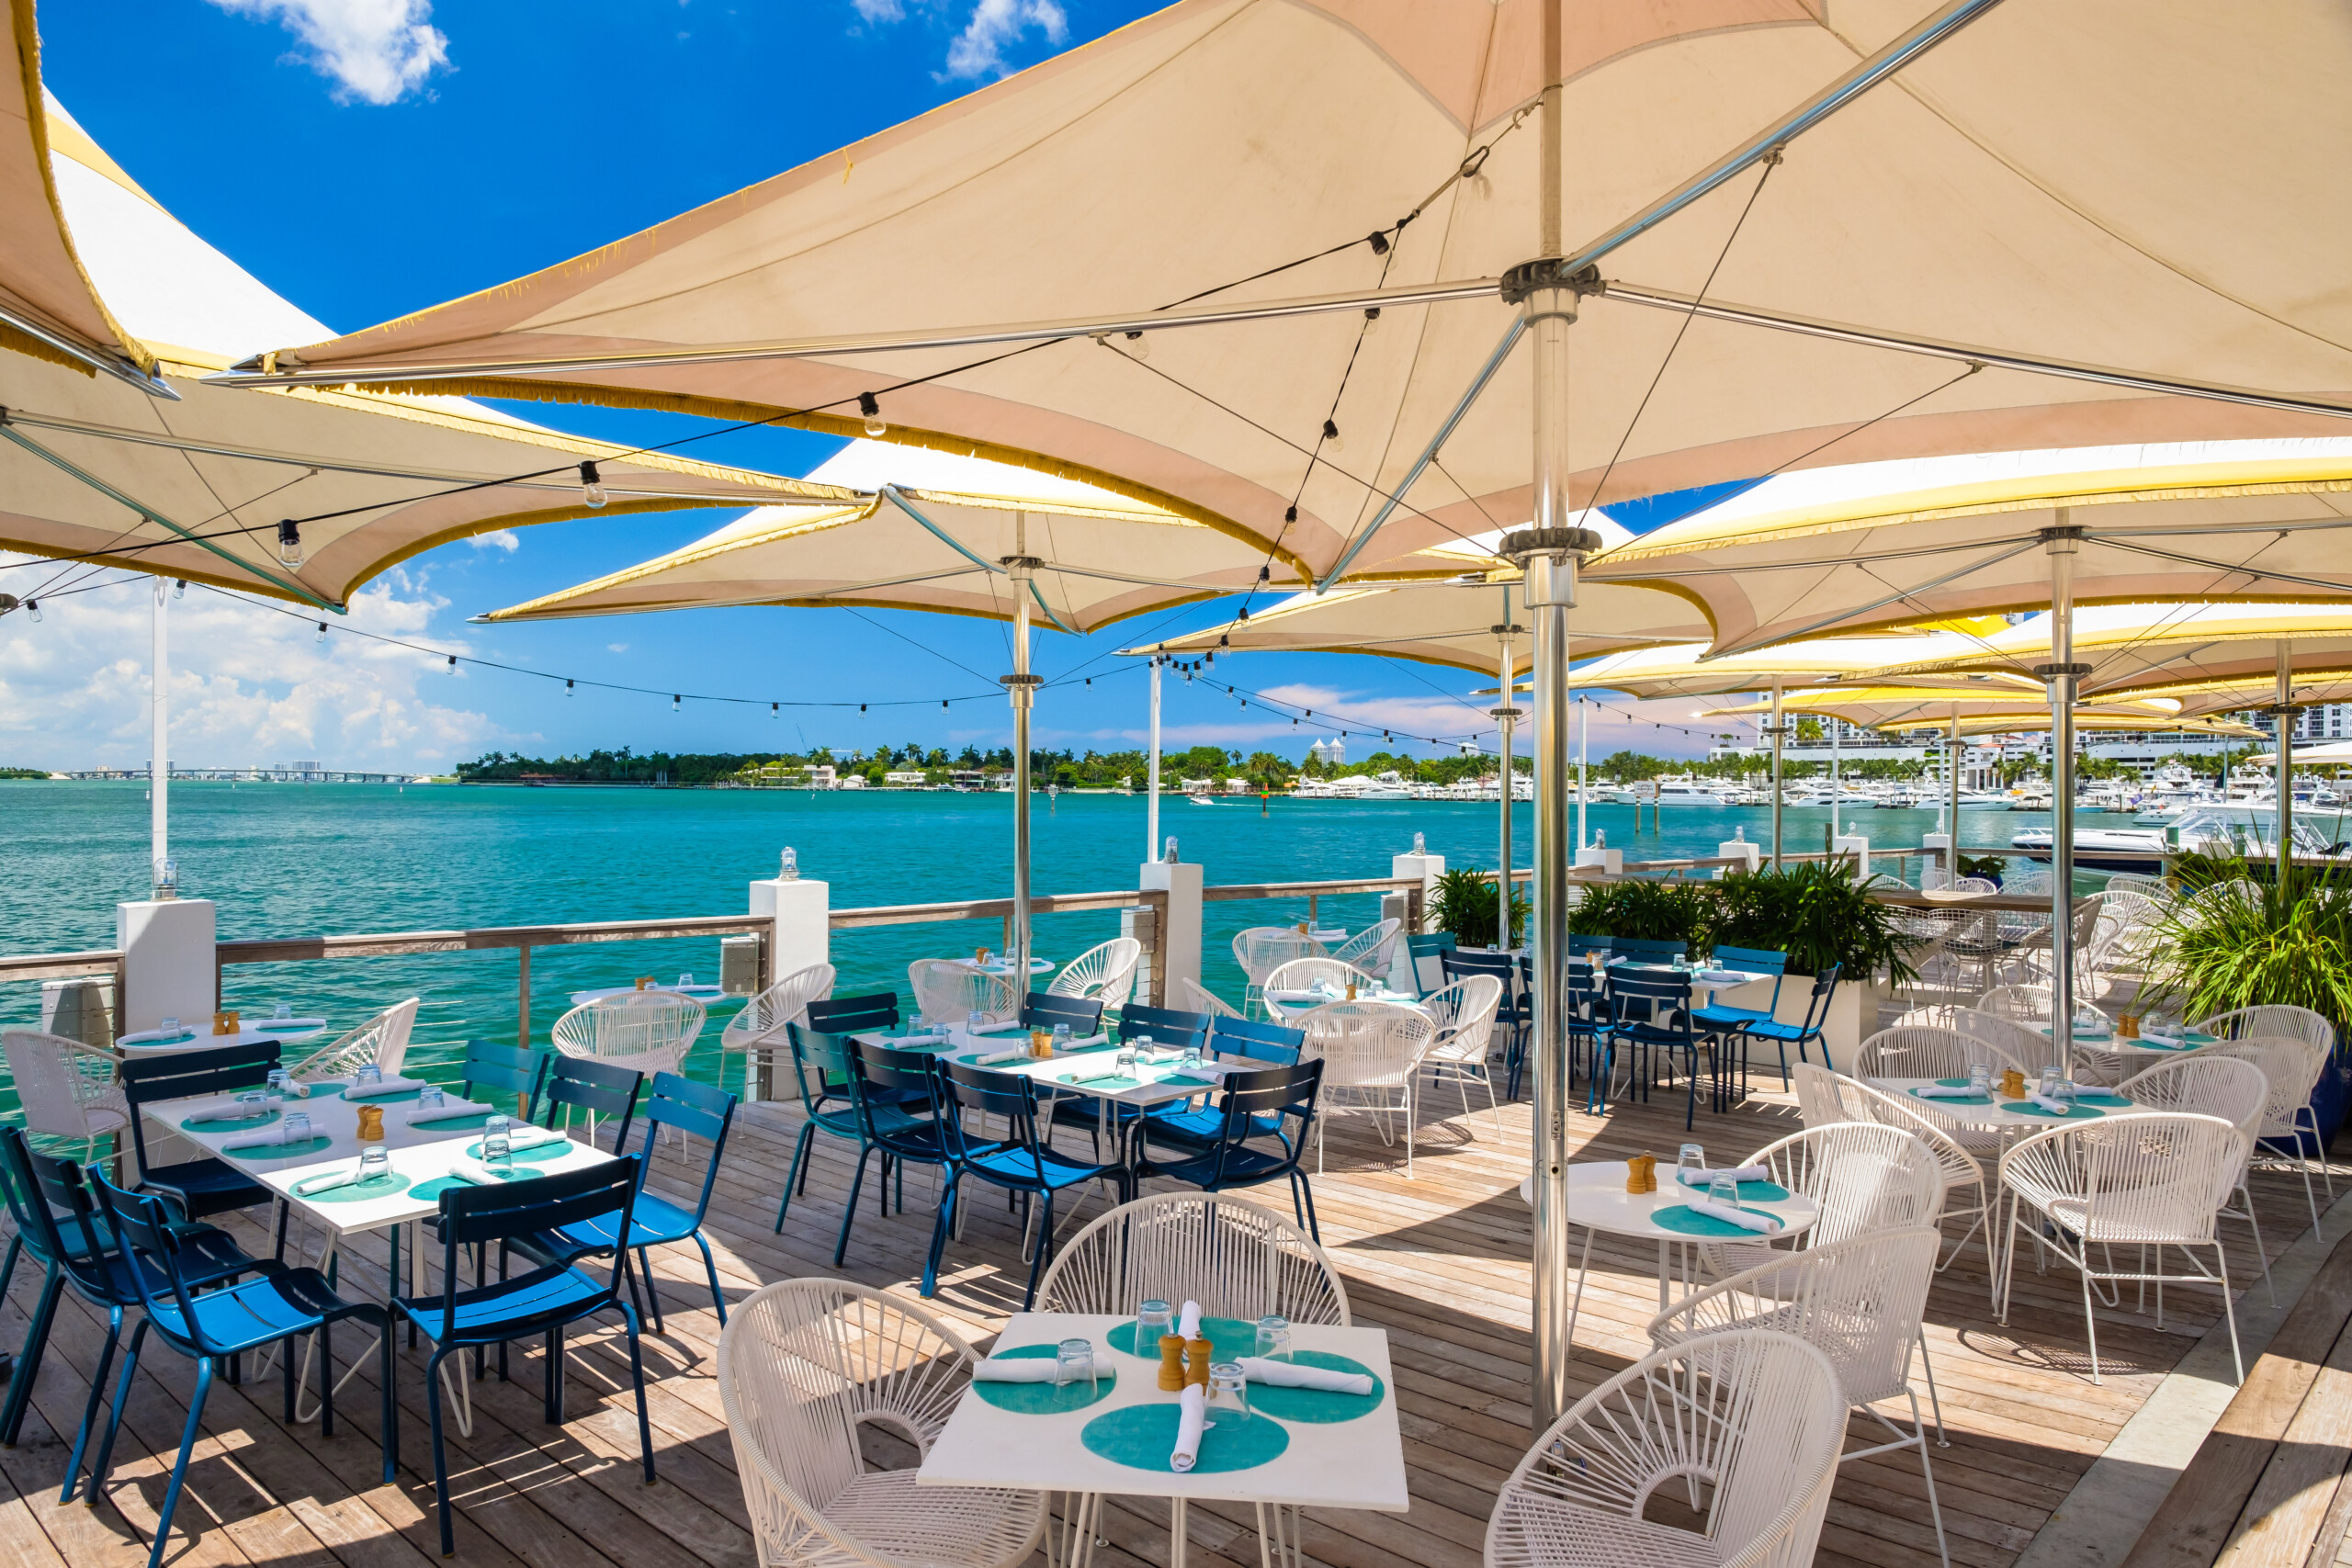 Miami Beach, Floryda – Piękny widok na morze z restauracji na świeżym powietrzu, licencja: shutterstock/By raulr